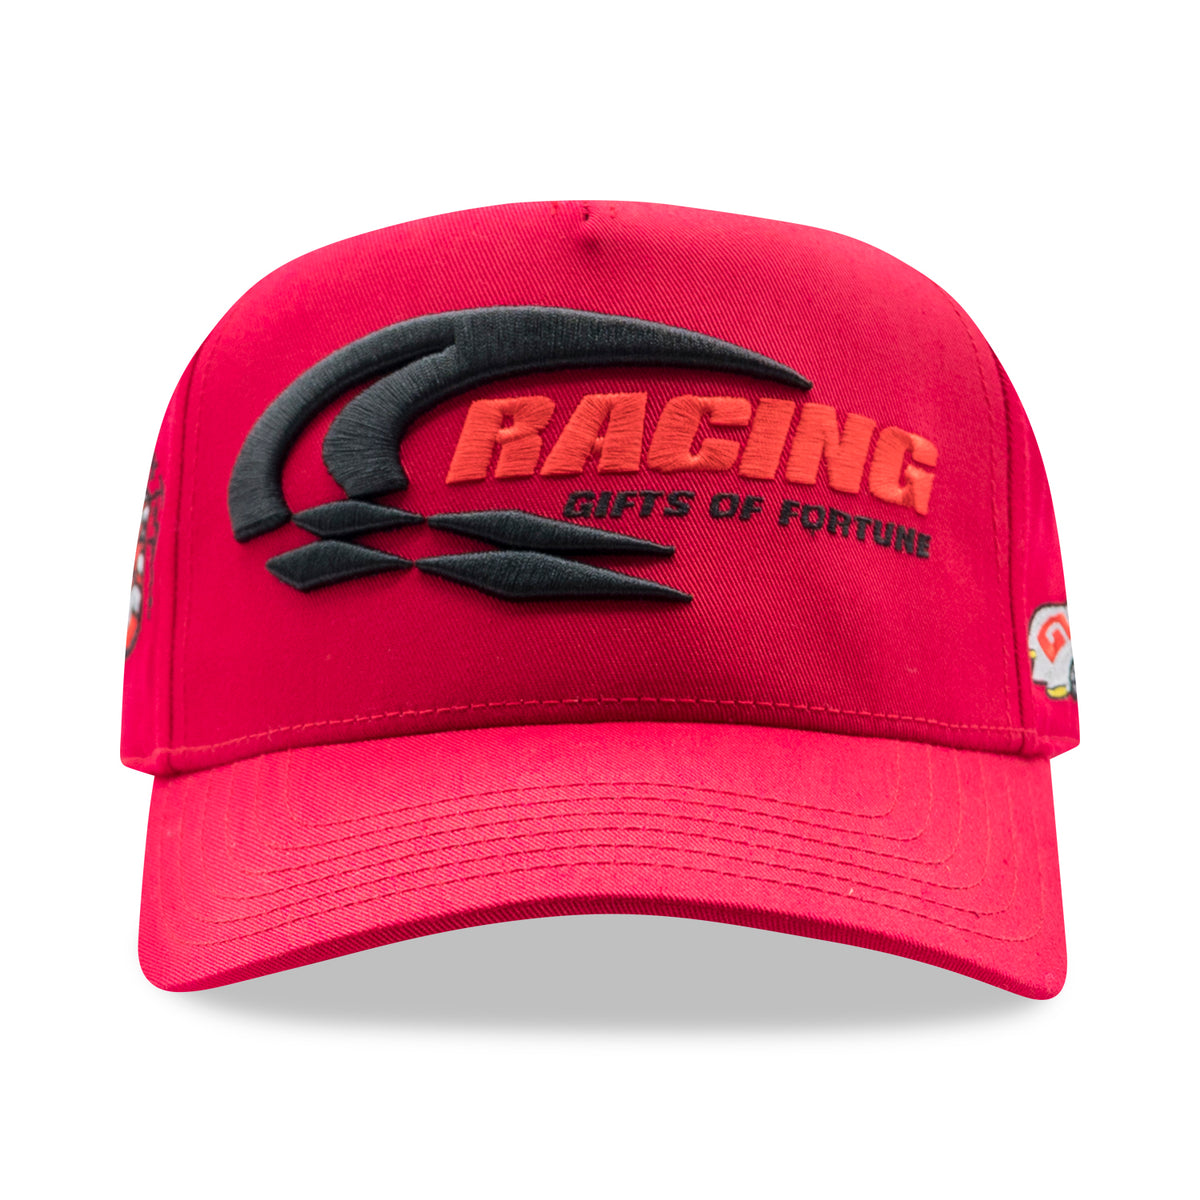 1 of 1 Speedway Trucker Hat| Red